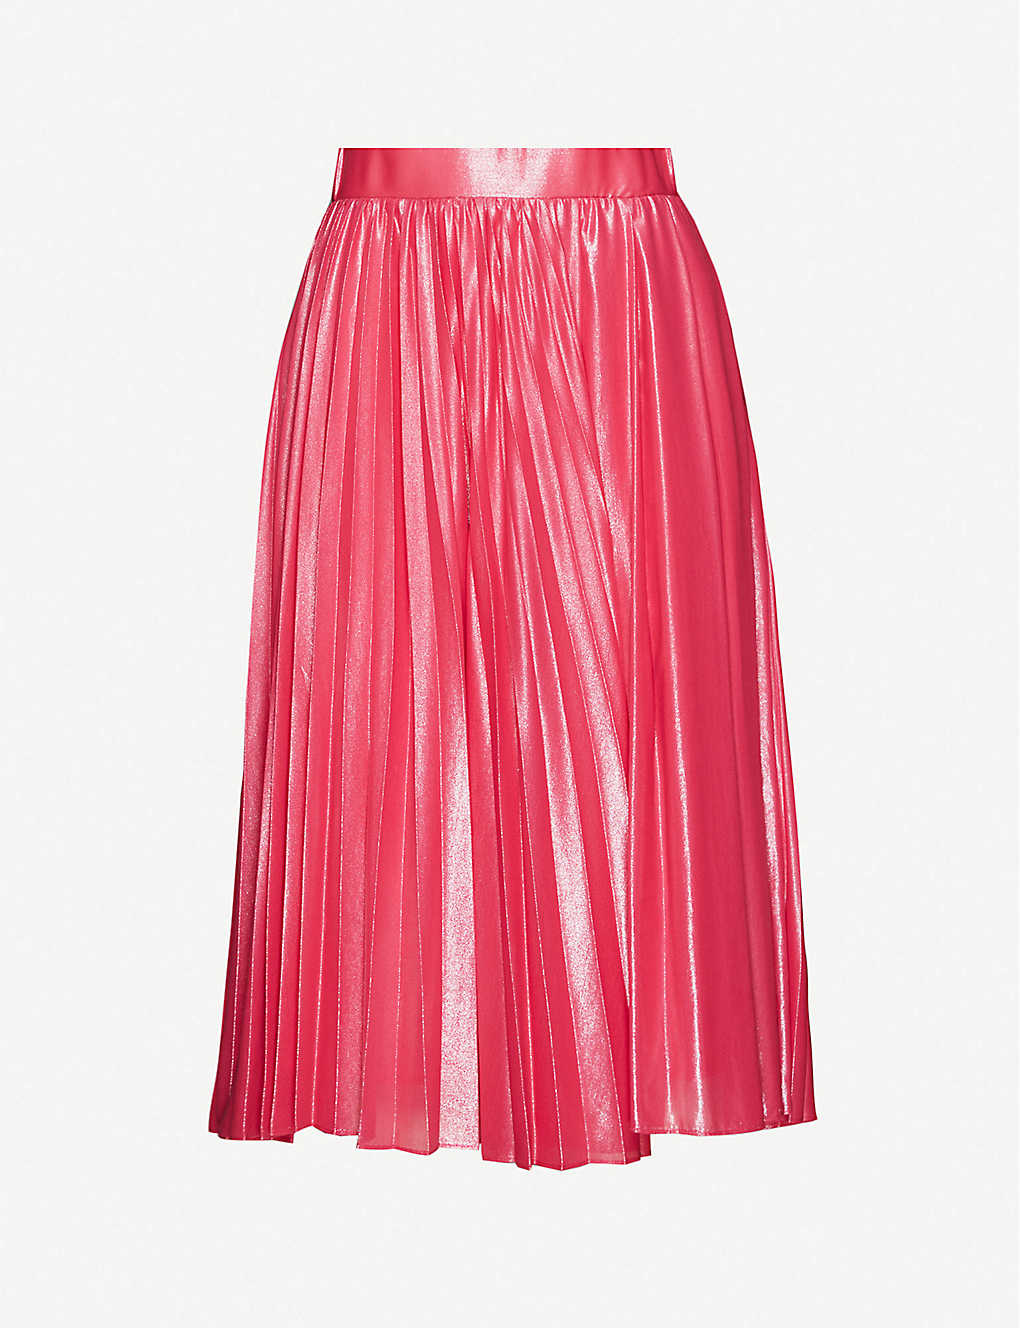 High Waist Pink Skirt